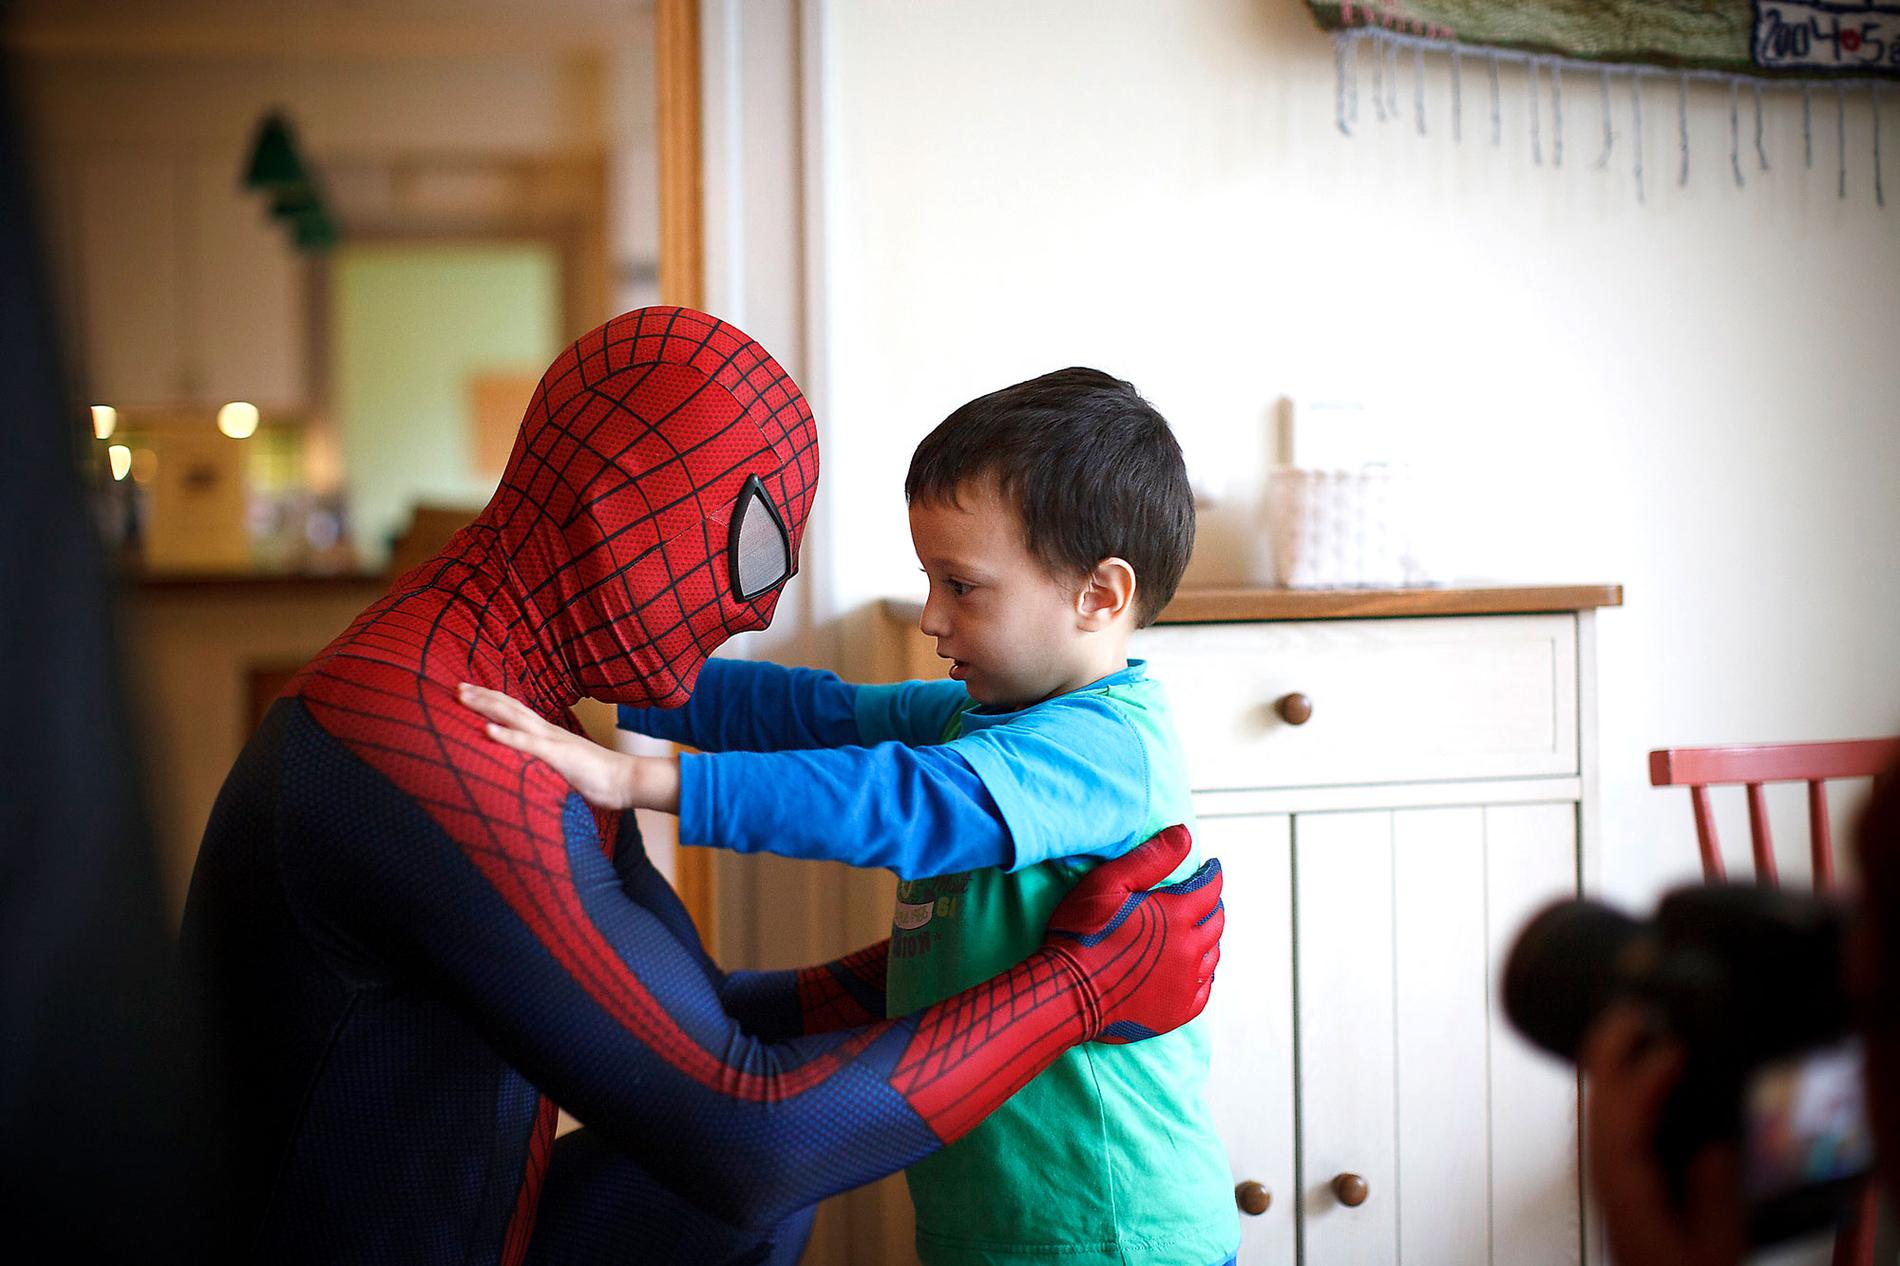 Mod, smärta och glädje Lille Adam har vågat sig fram till Spiderman. Fredrik och Filip möter många känslor under sina framträdanden.